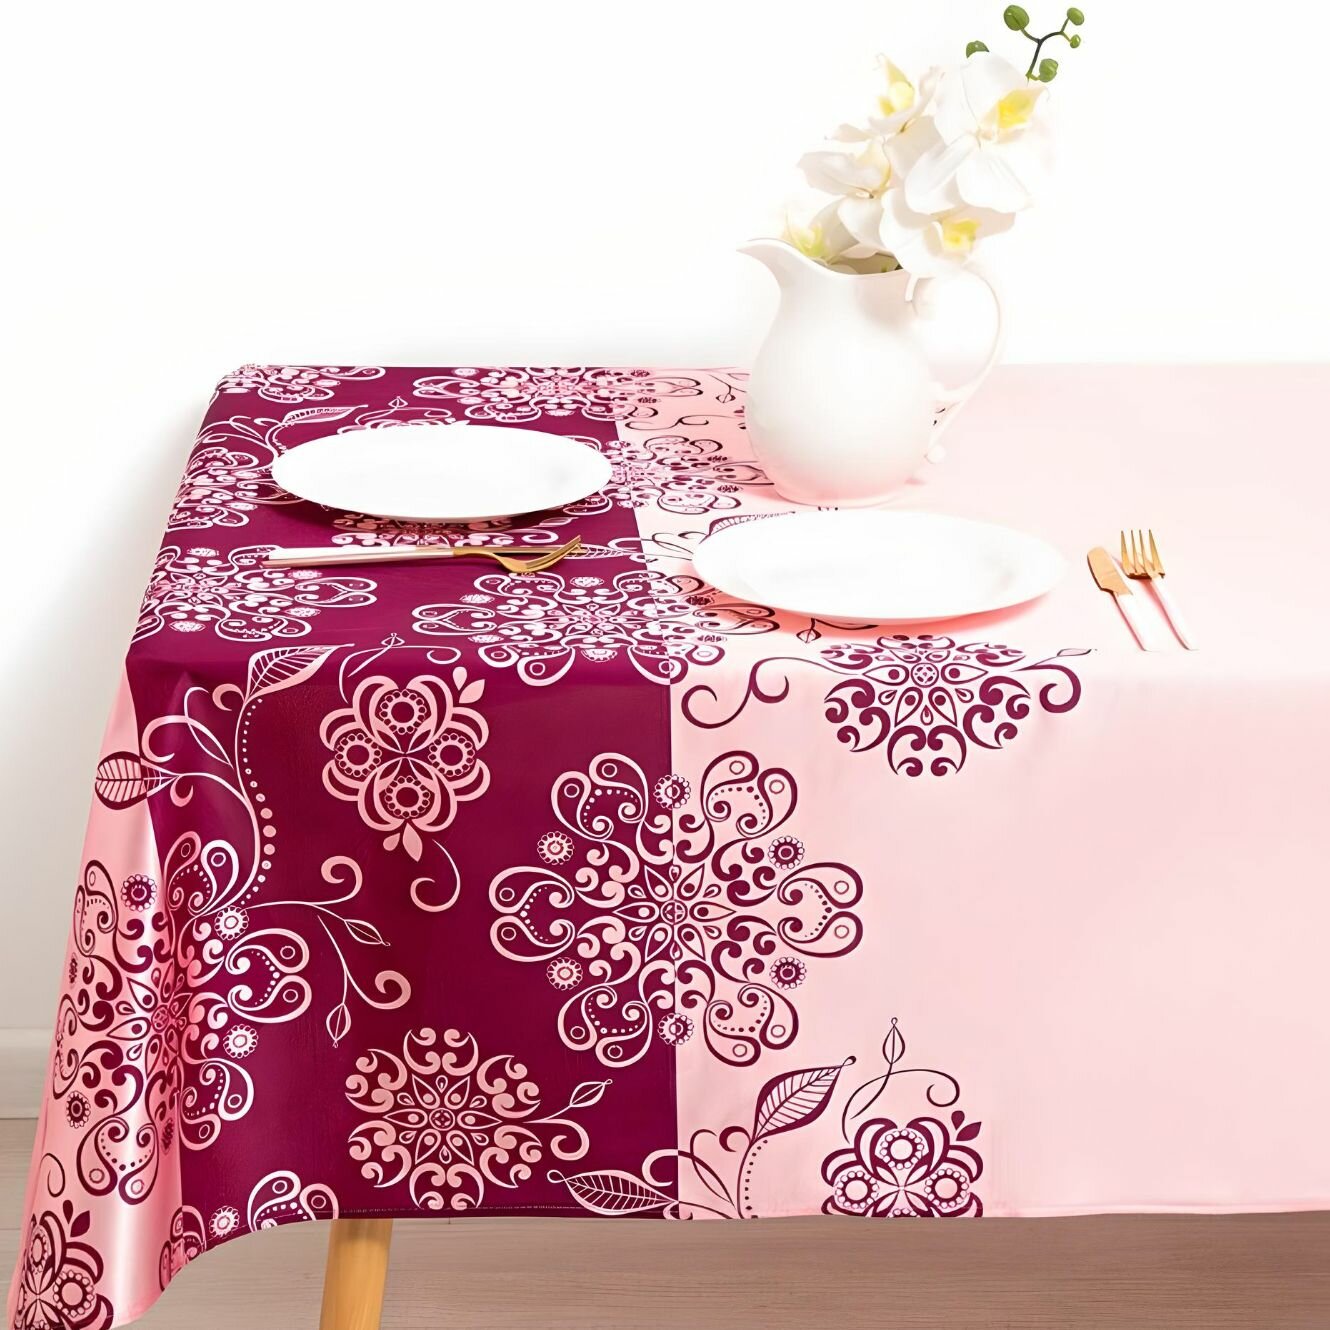 Скатерть на стол 140х210 праздничная прямоугольная трикот розовая